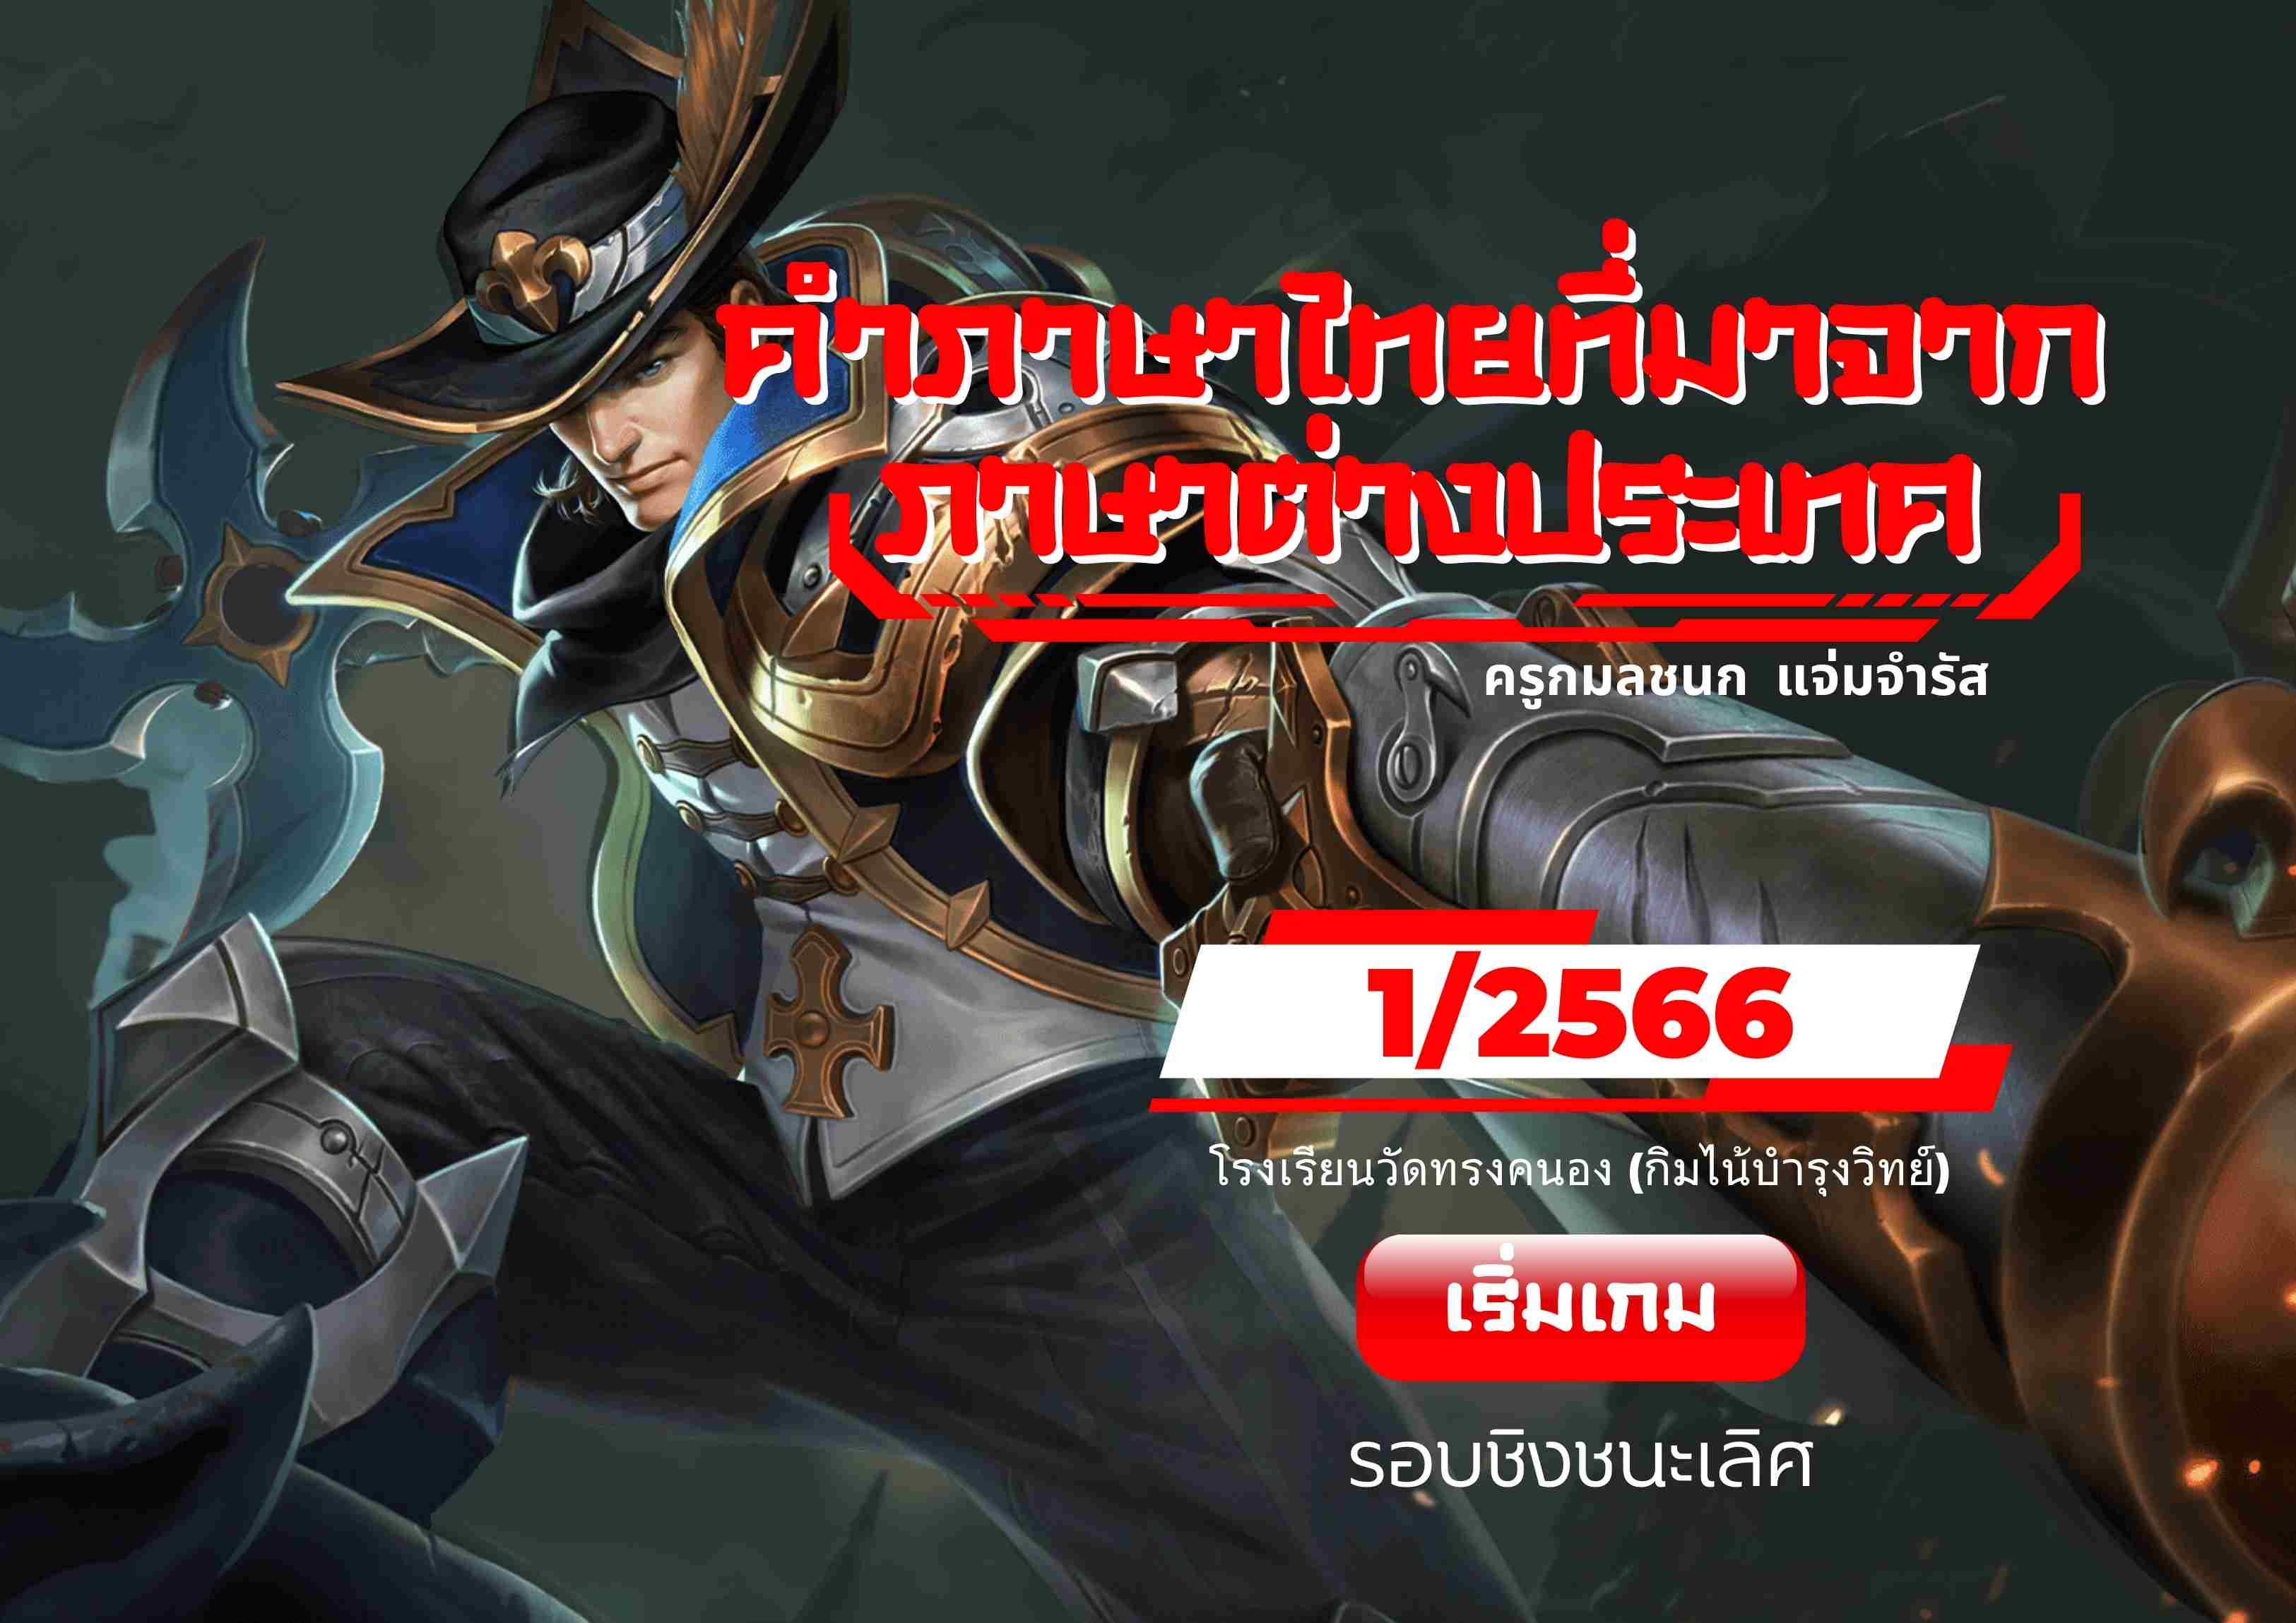 ภาพประกอบไอเดีย RoV Gamification การสอนภาษาไทยโดยใช้เทคนิคเกมมิฟิเคชัน